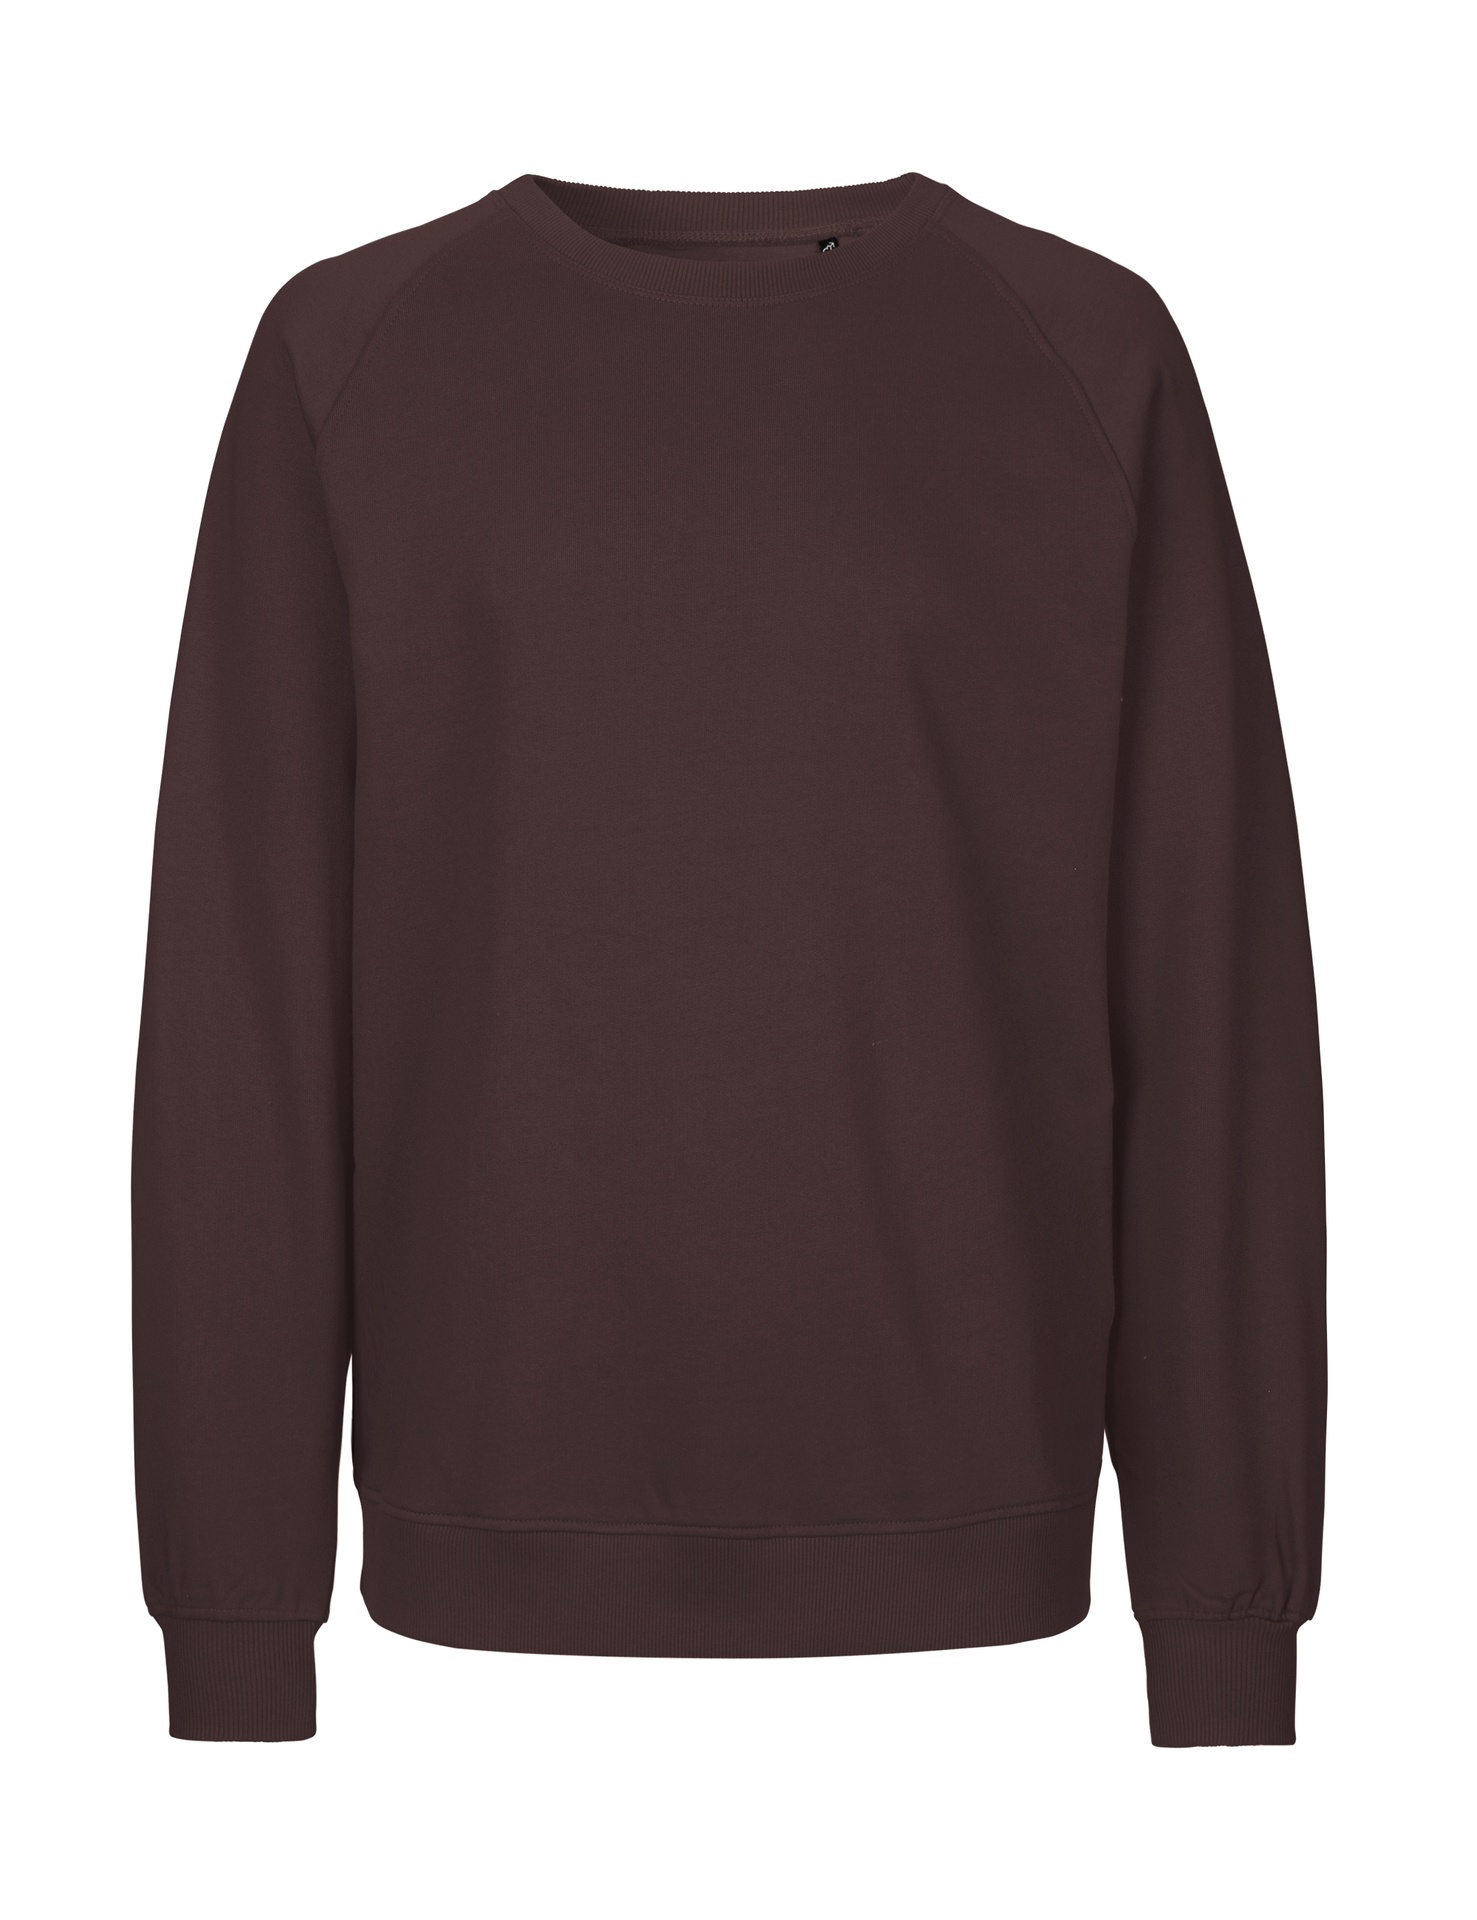 [PR/02806] Unisex Sweatshirt (Brown 37, S)